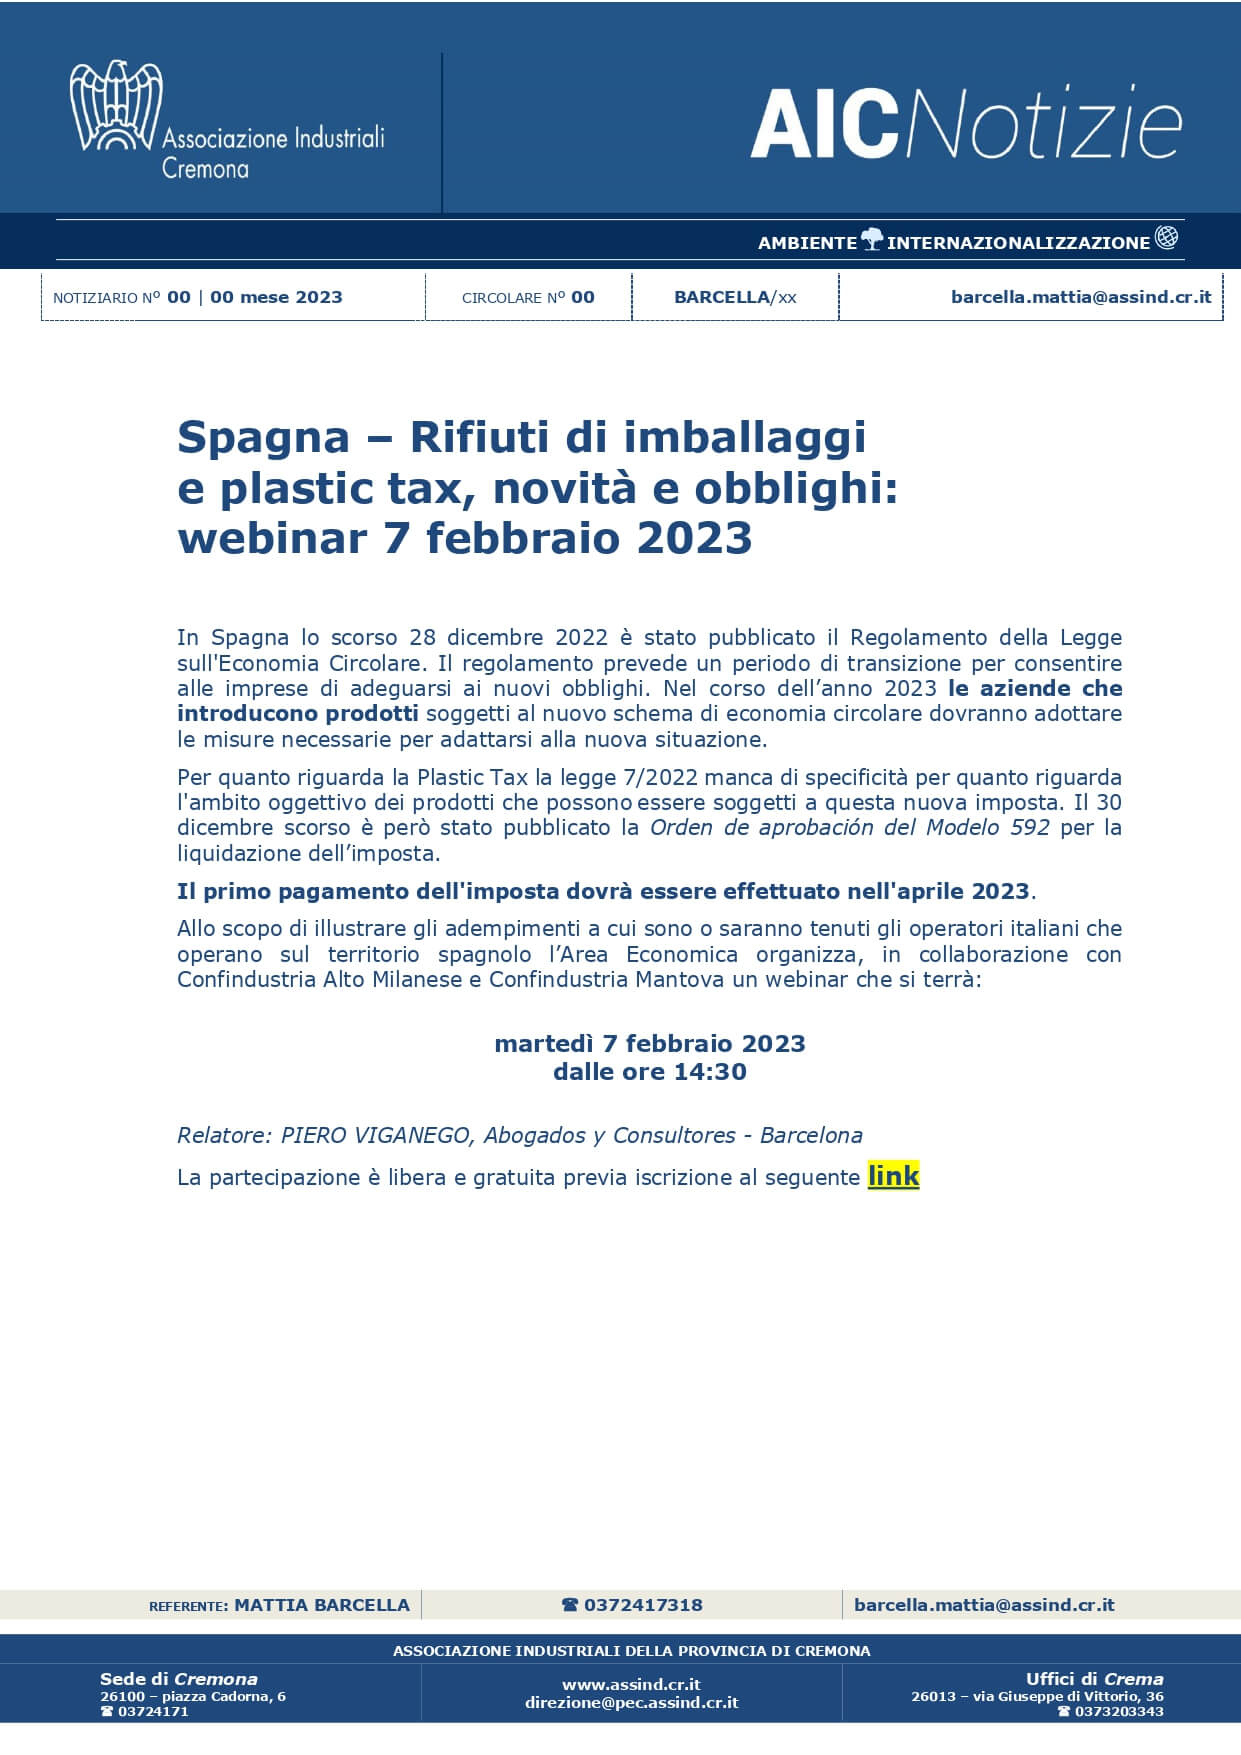 PDF ASSOCIAZIONE INDUSTRIALI DELLA PROVINCIA DI CREMONA: Piero Viganego participe à Crémone en tant qu'intervenant à un webinaire sur la taxe sur les emballages en plastique en Espagne et l'économie circulaire